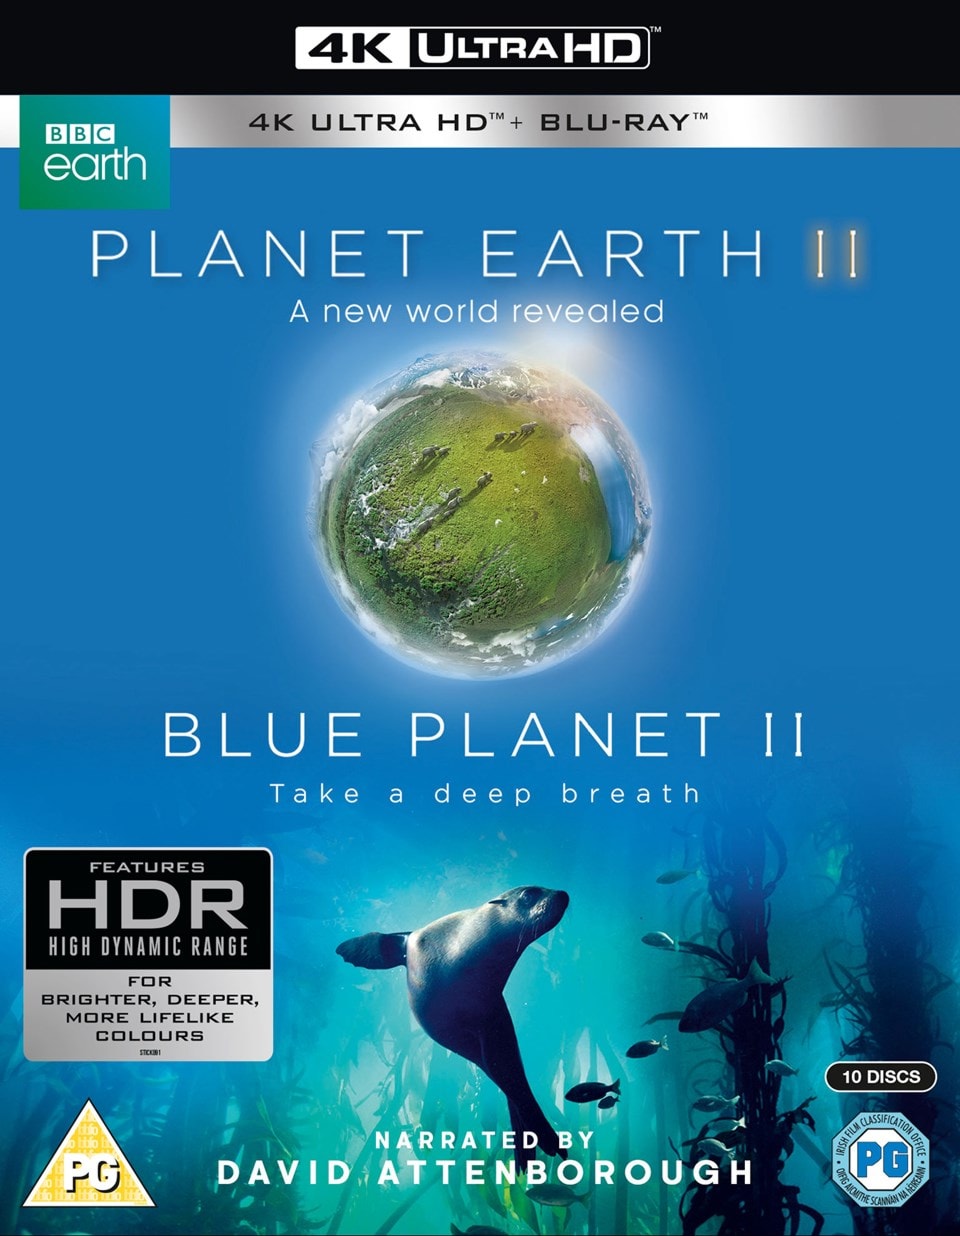 blue planet 2